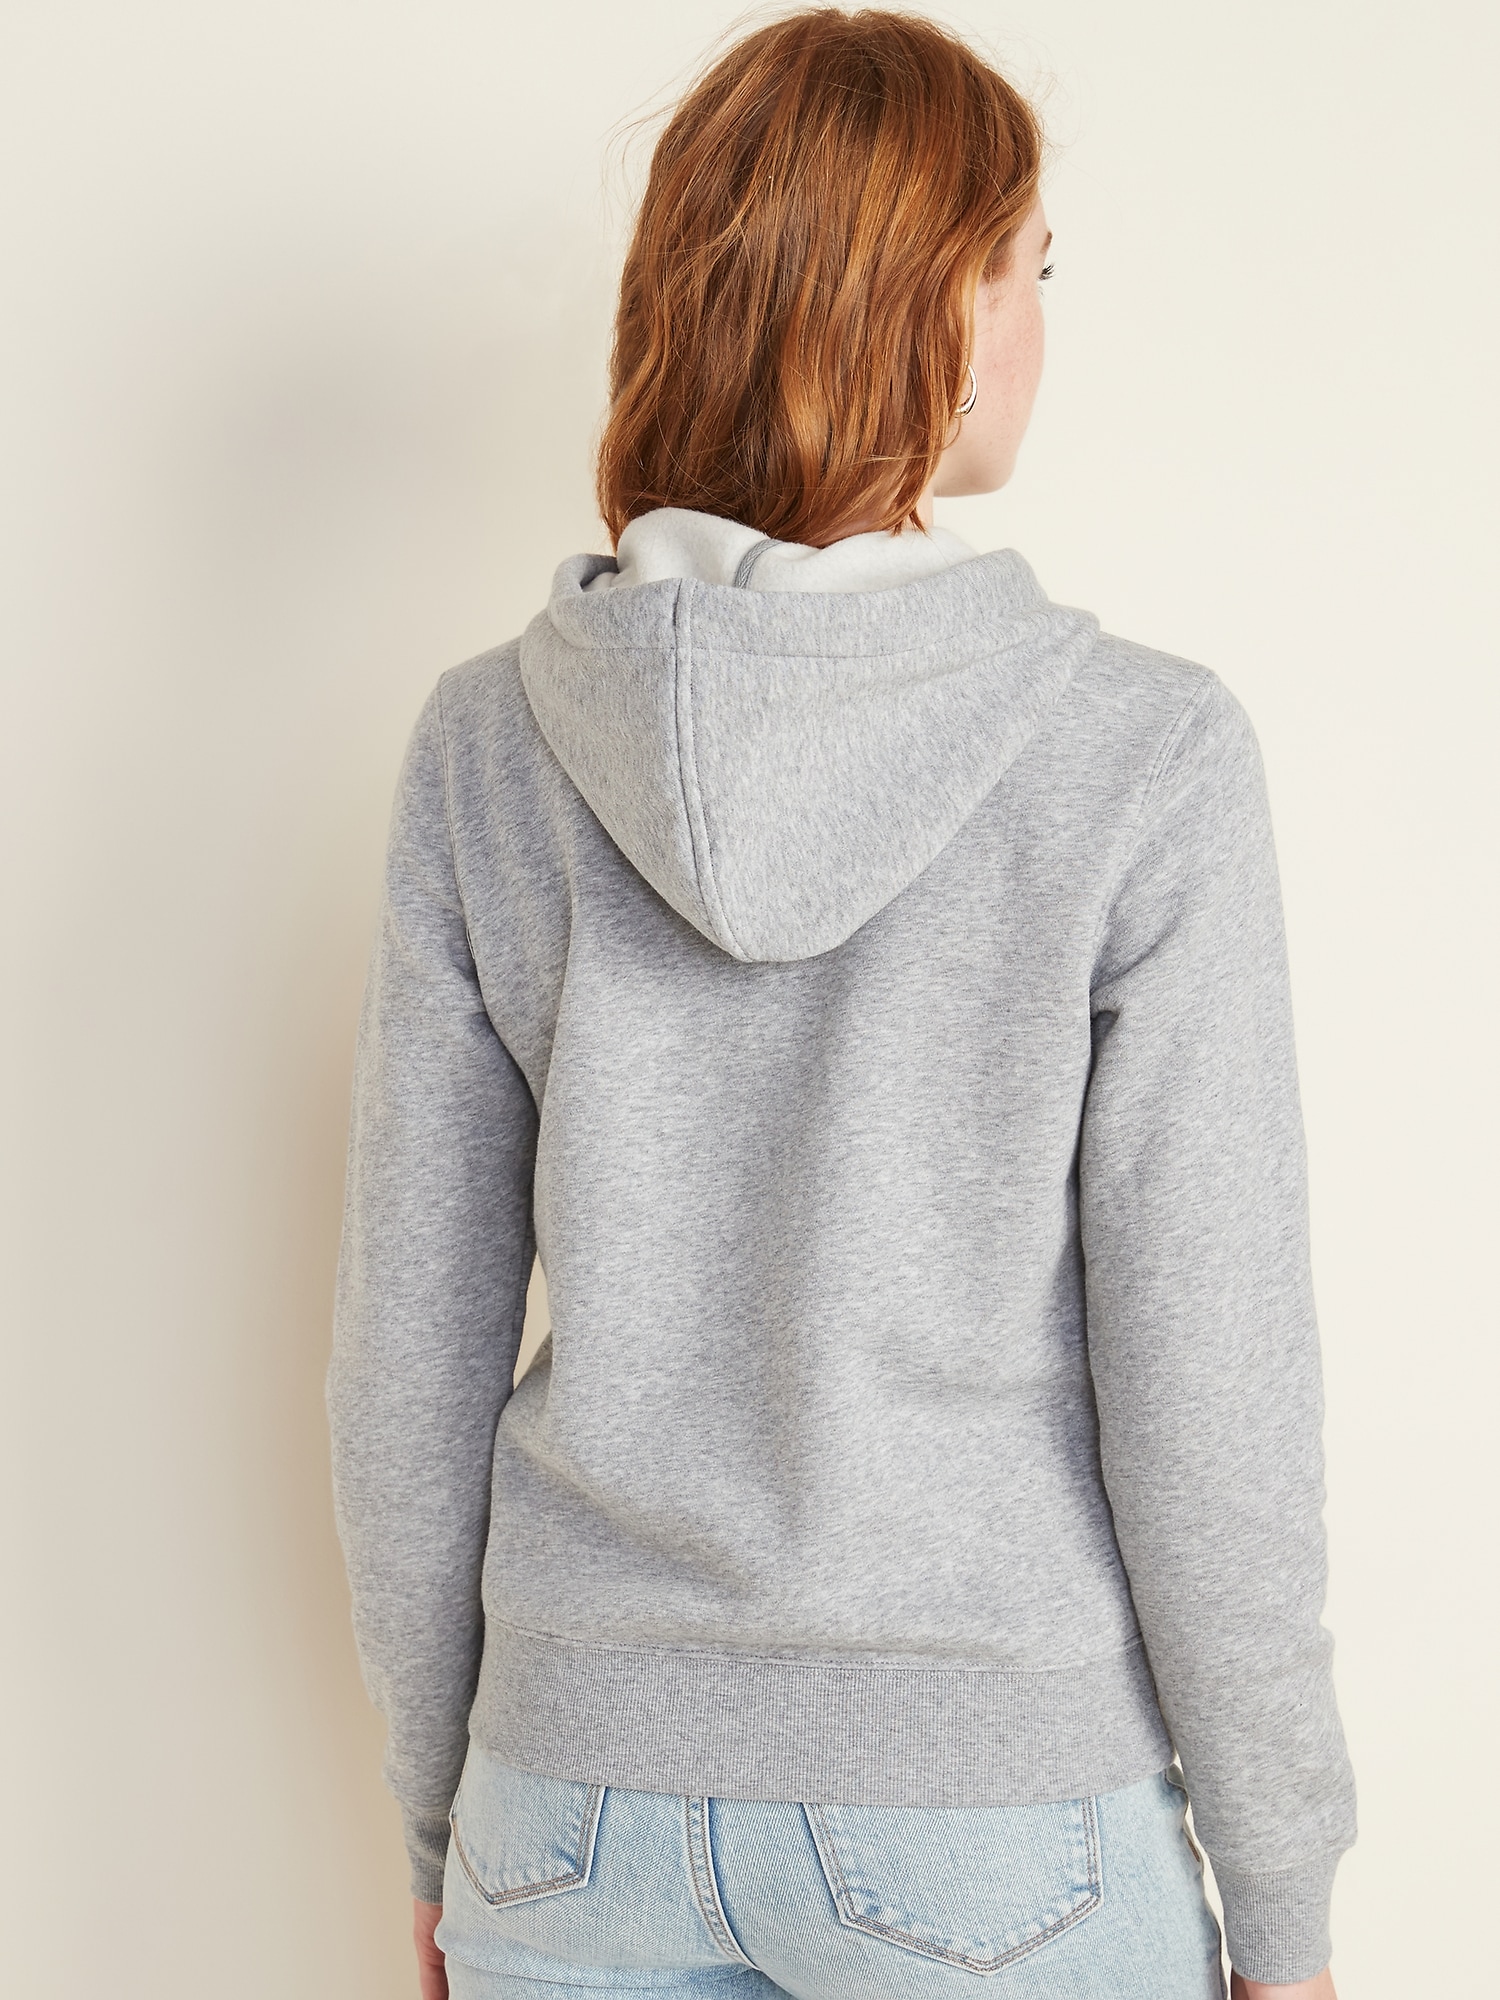 hoodie sweater for ladies